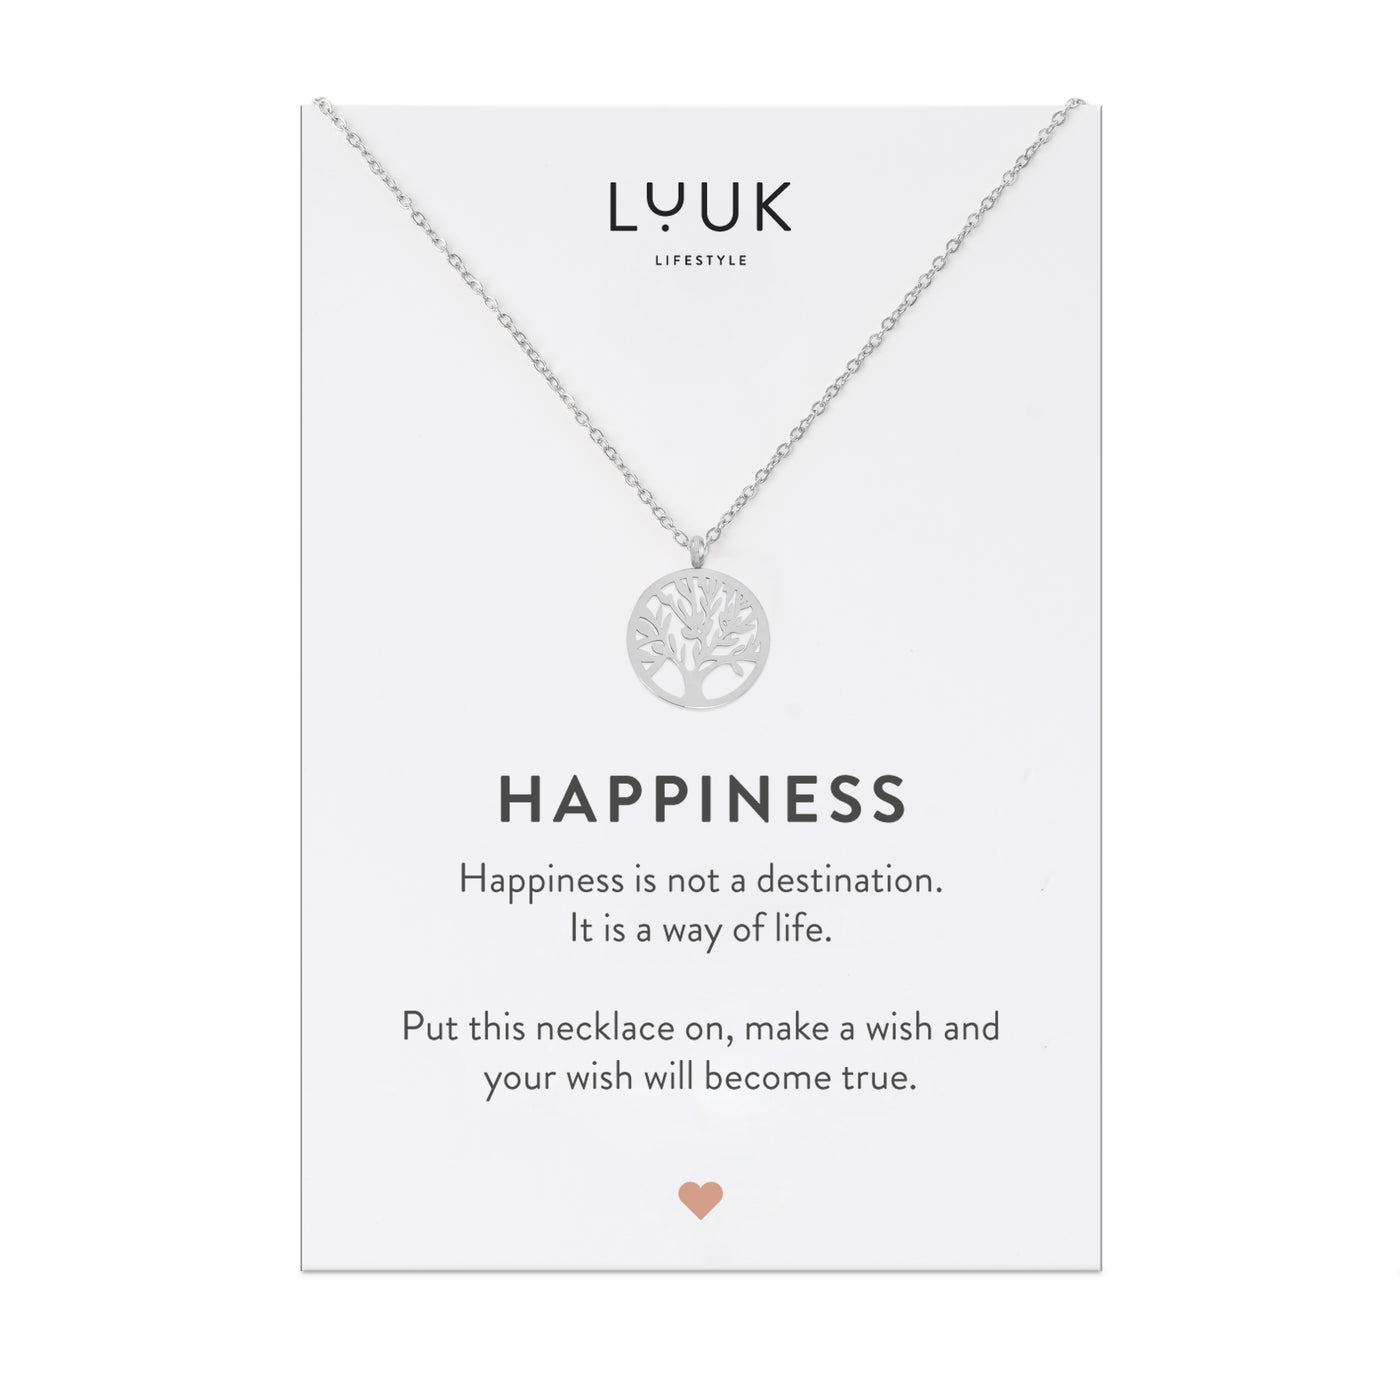 Silberne Halskette mit Lebensbaum Anhänger auf Happiness Spruchkarte von der Marke Luuk Lifestyle 